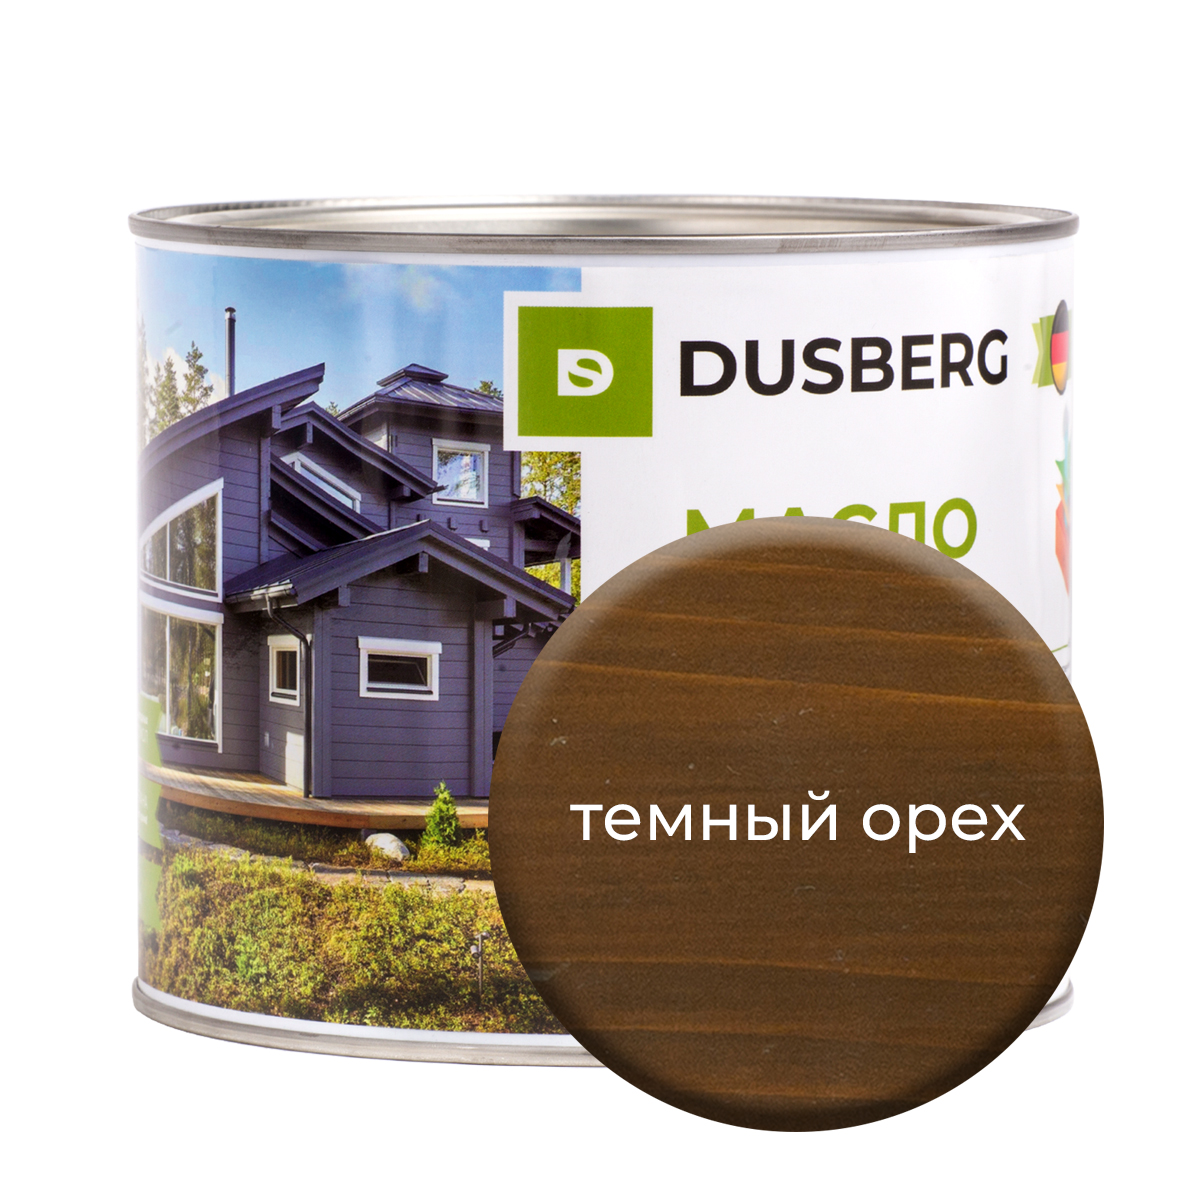 Масло Dusberg для дерева на бесцветной основе, 2 л Темный орех масло dusberg для террас 2л темный янтарный